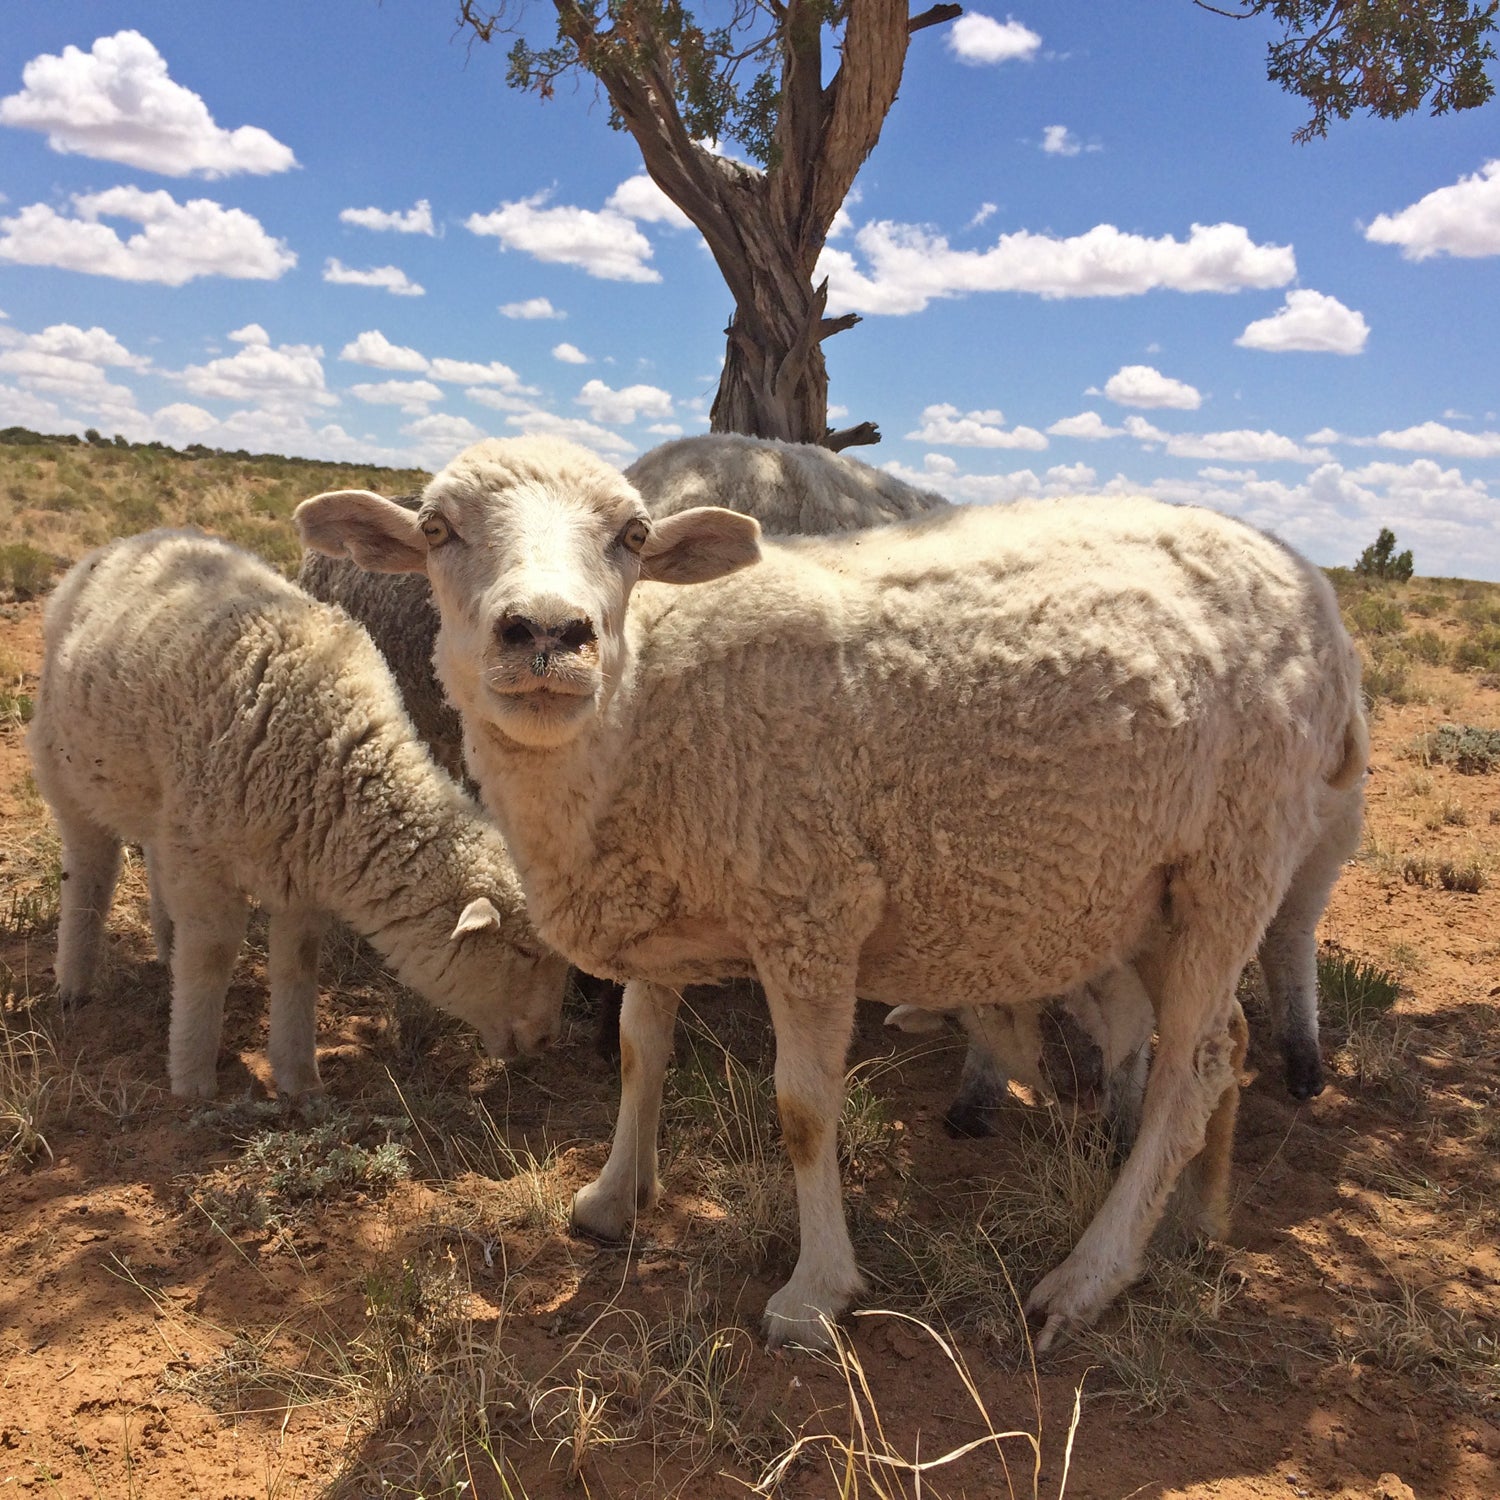 https://cdn.outsideonline.com/wp-content/uploads/2016/08/03/navajo-sheep-herding_s.jpg